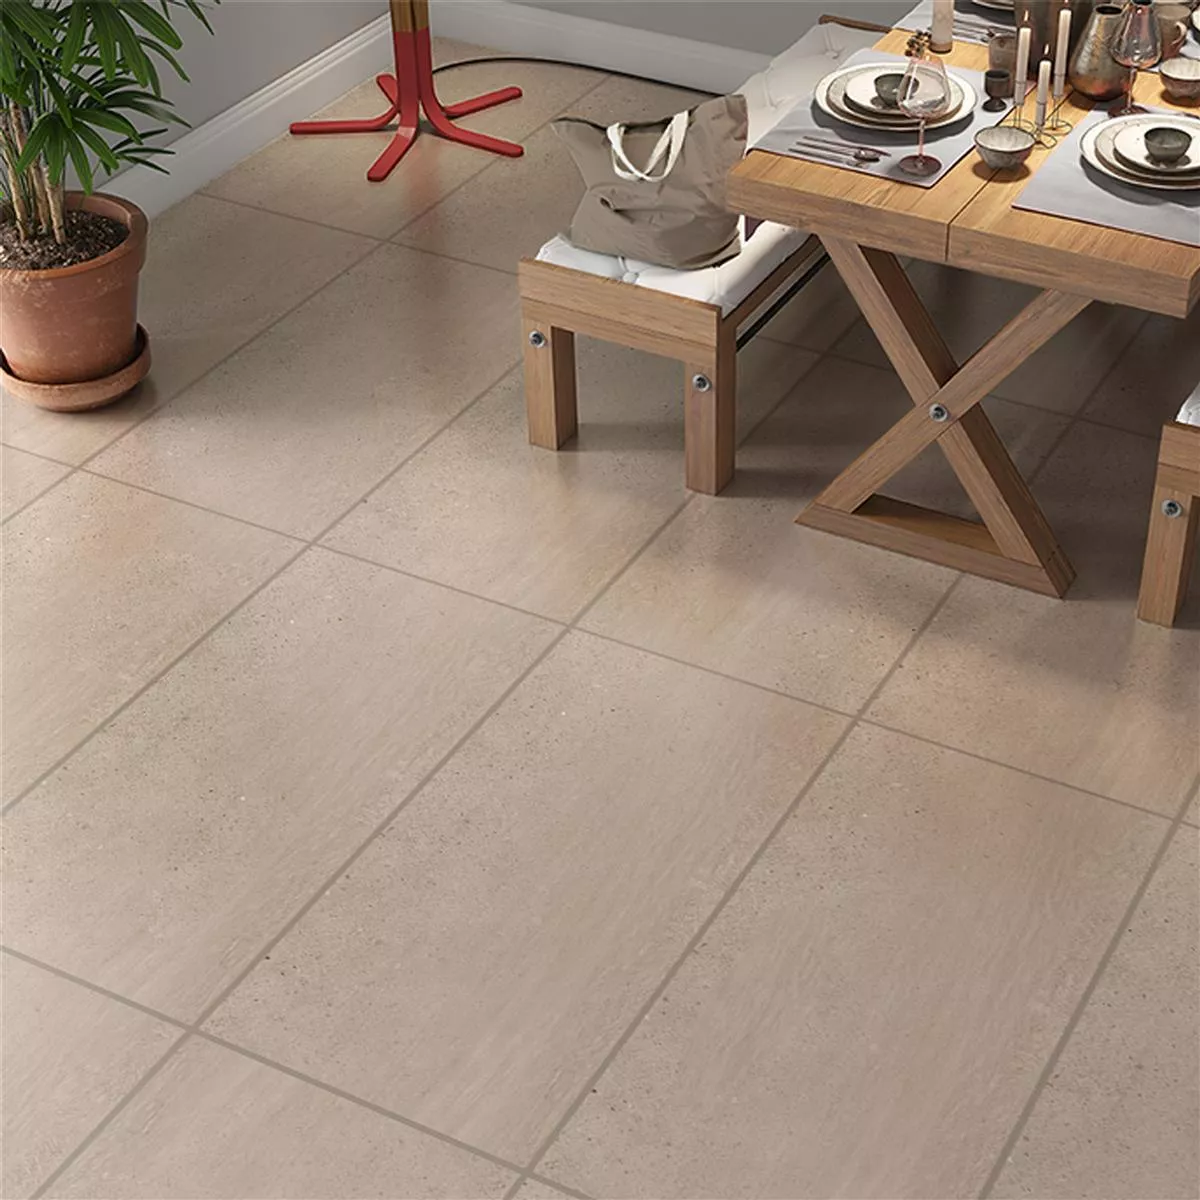 Floor Tiles Darazo Wood Optic 30x60cm Beige